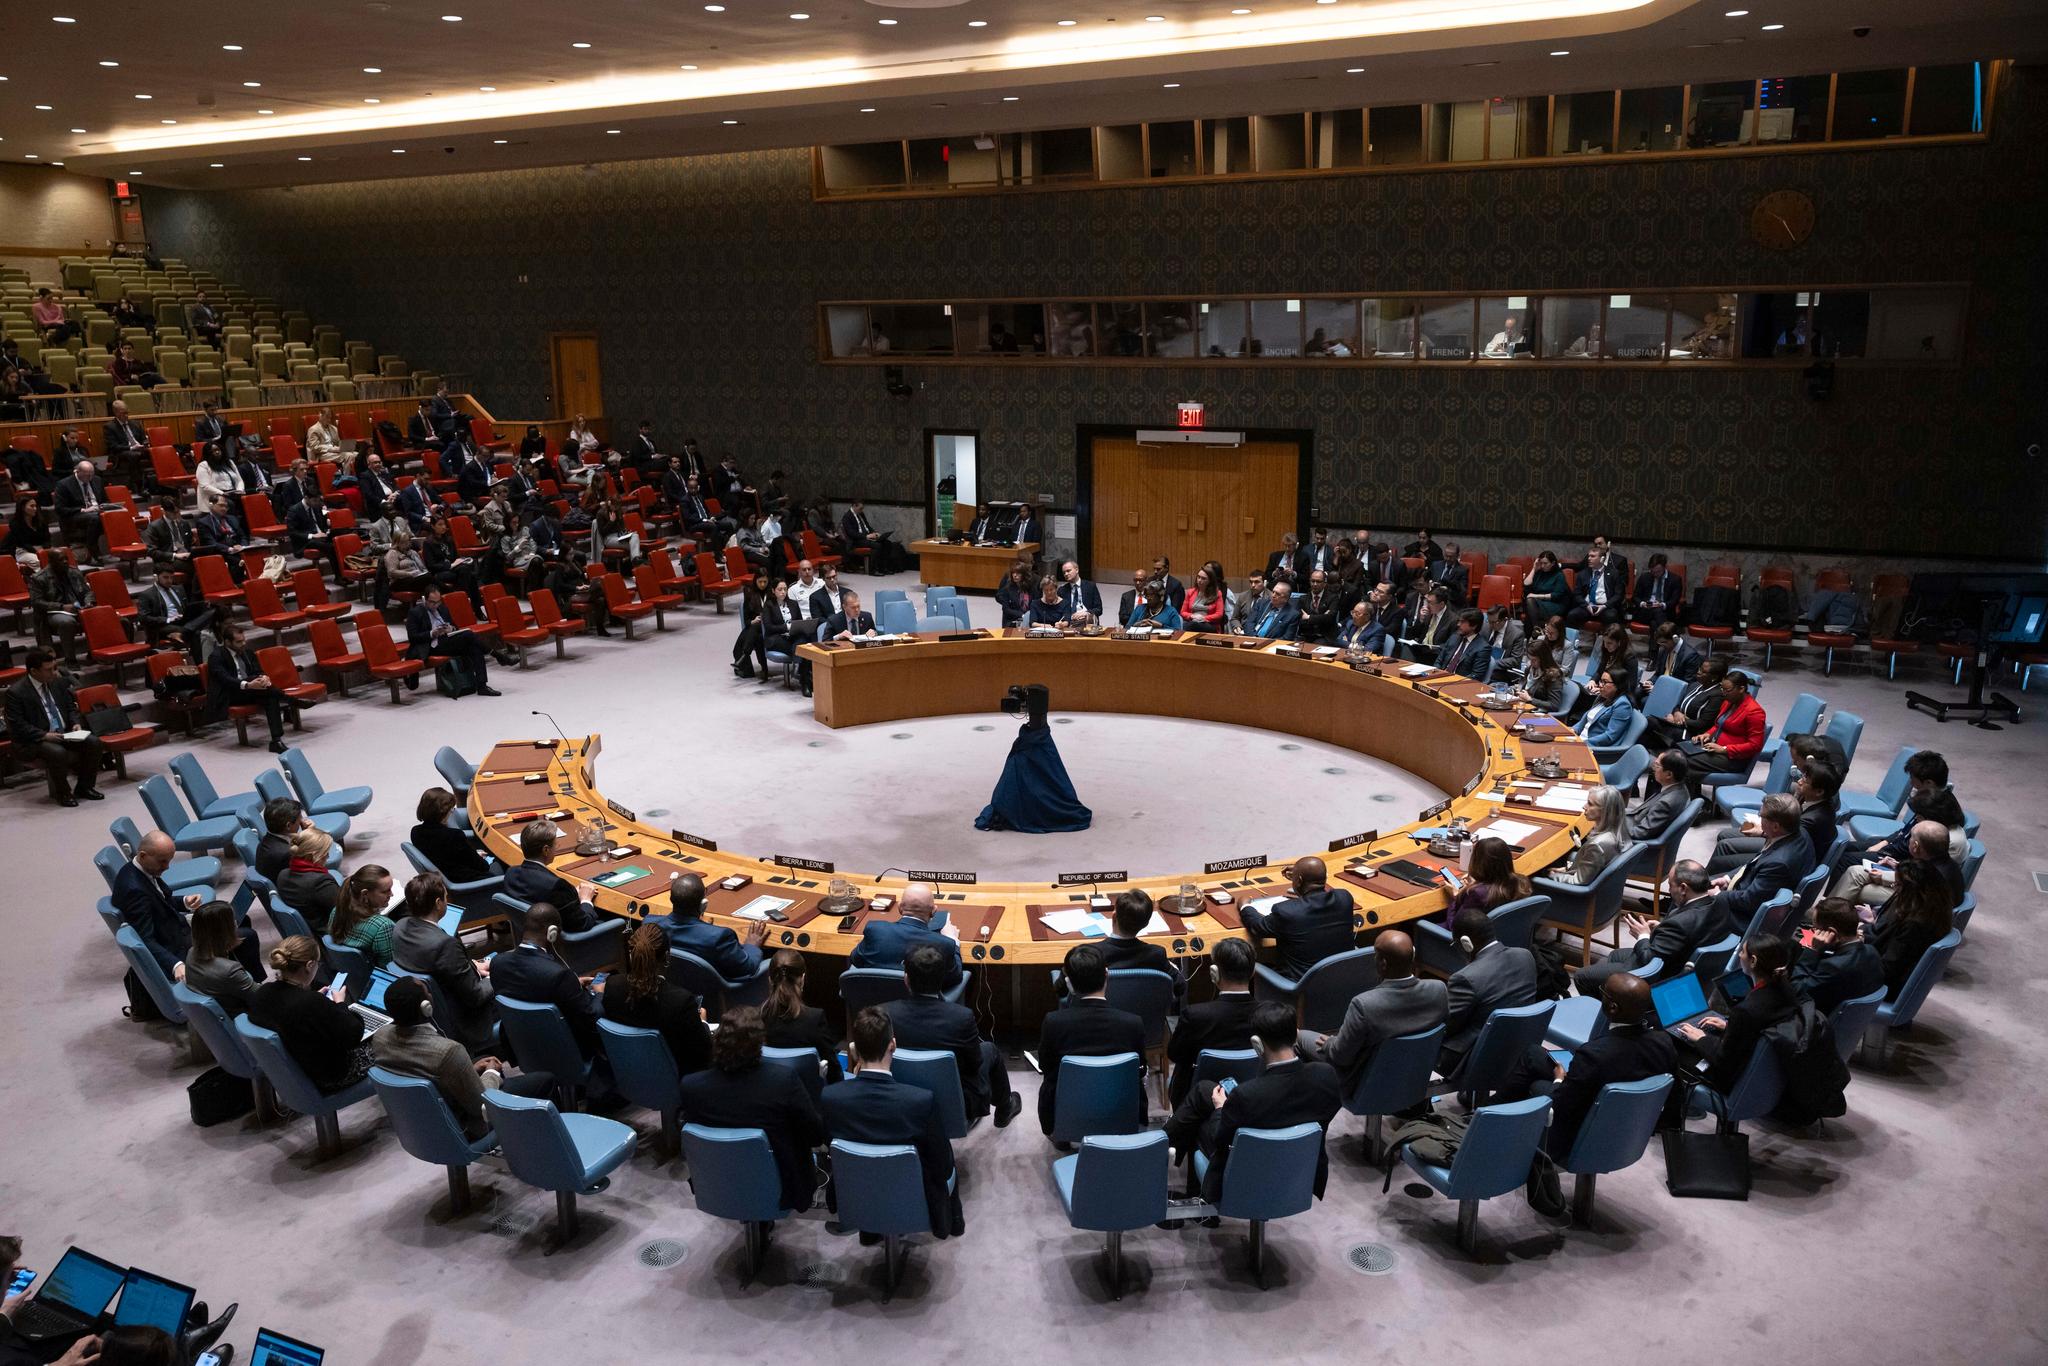 Le Conseil de sécurité de l’ONU a adopté un cessez-le-feu immédiat à Gaza.  Cela signifie la décision.